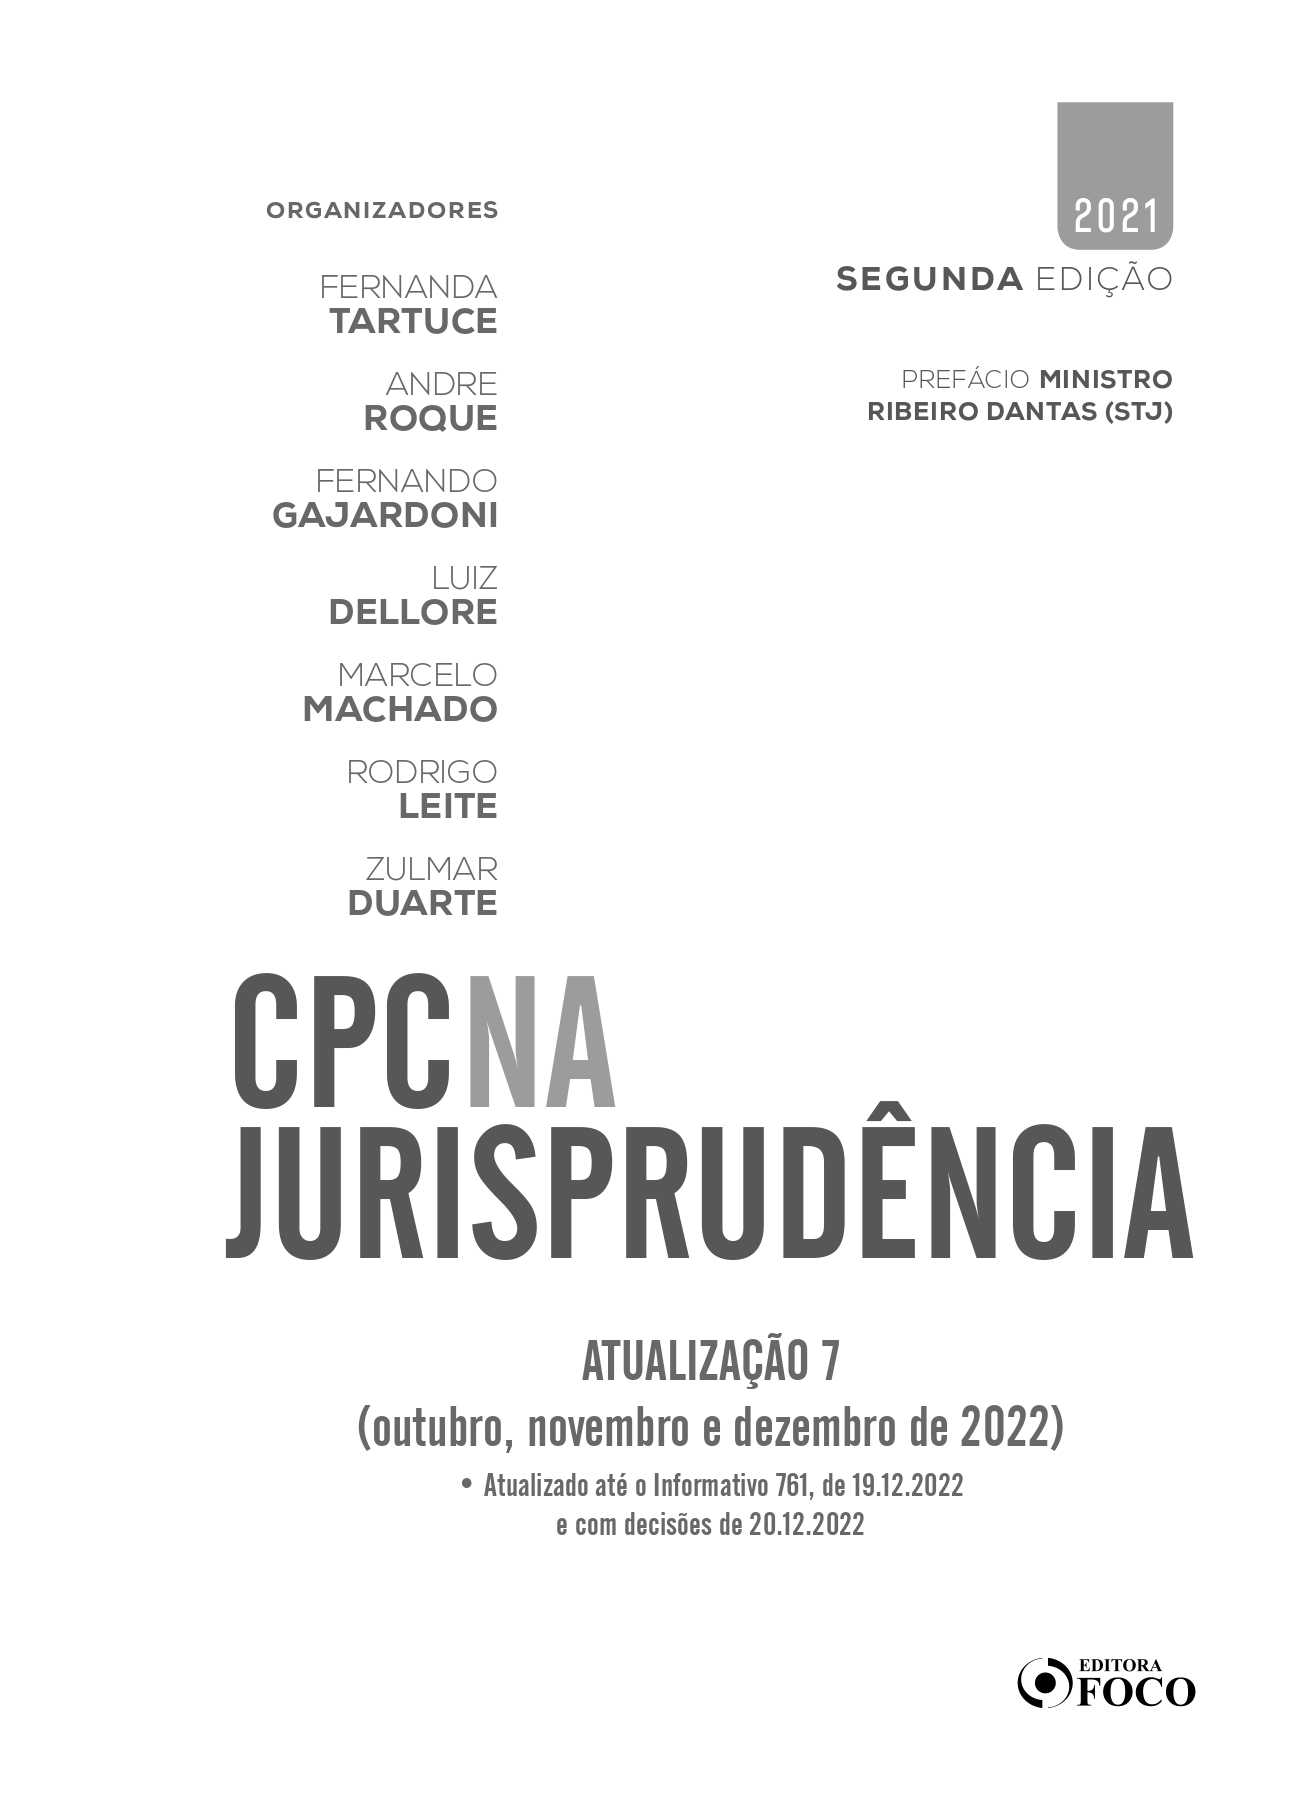 Atualização 07 | CPC na Jurisprudência | Editora Foco